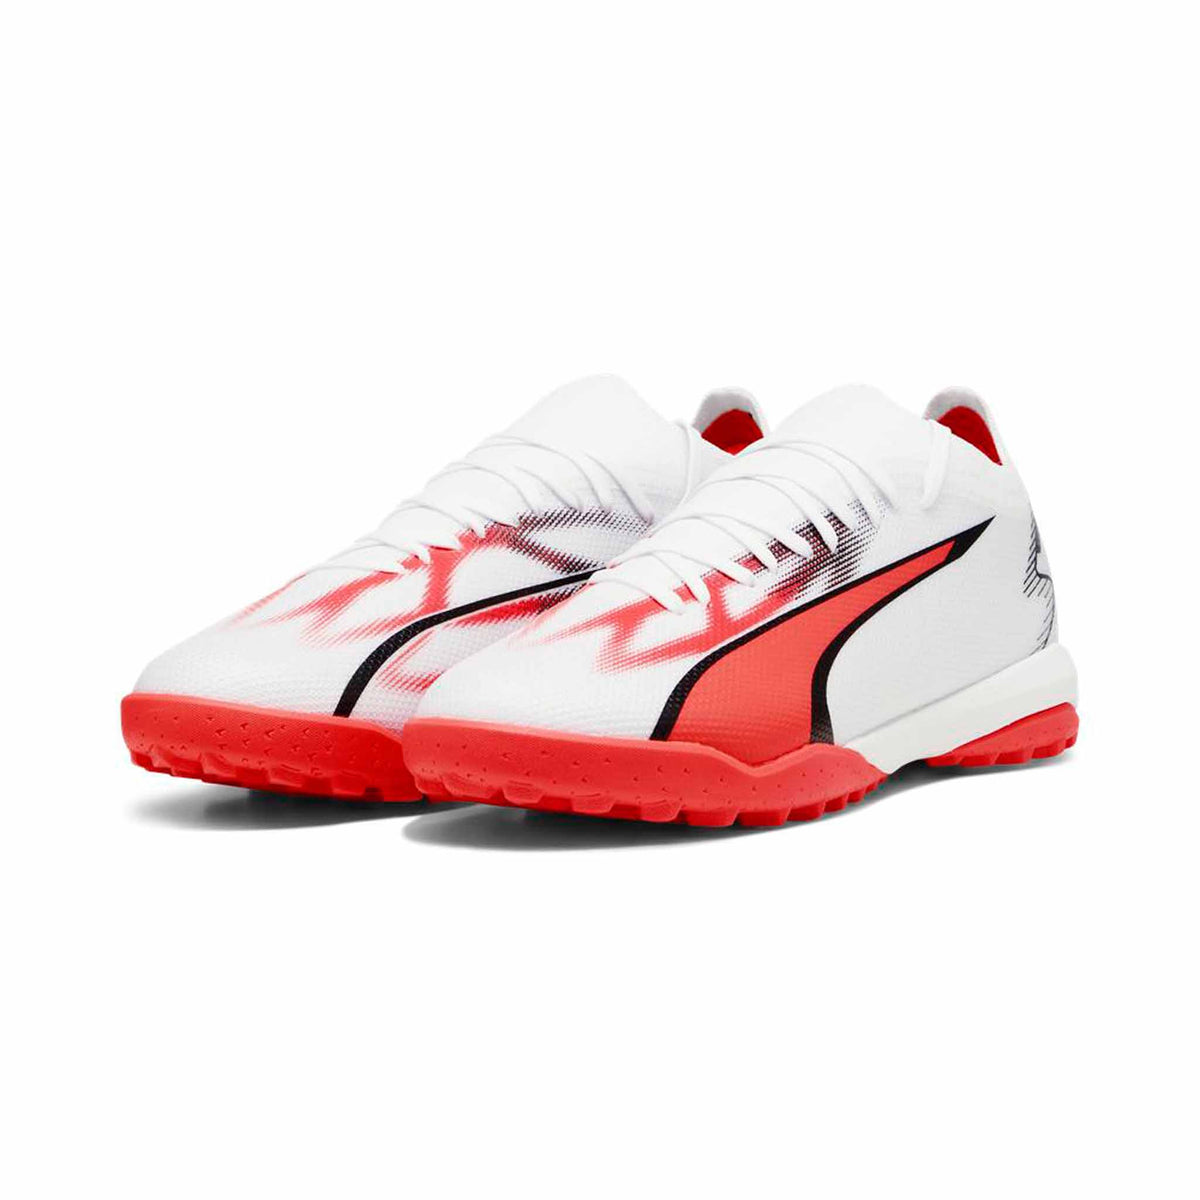 Puma Ultra Match TT chaussures de soccer turf - Puma White / Fire Orchid